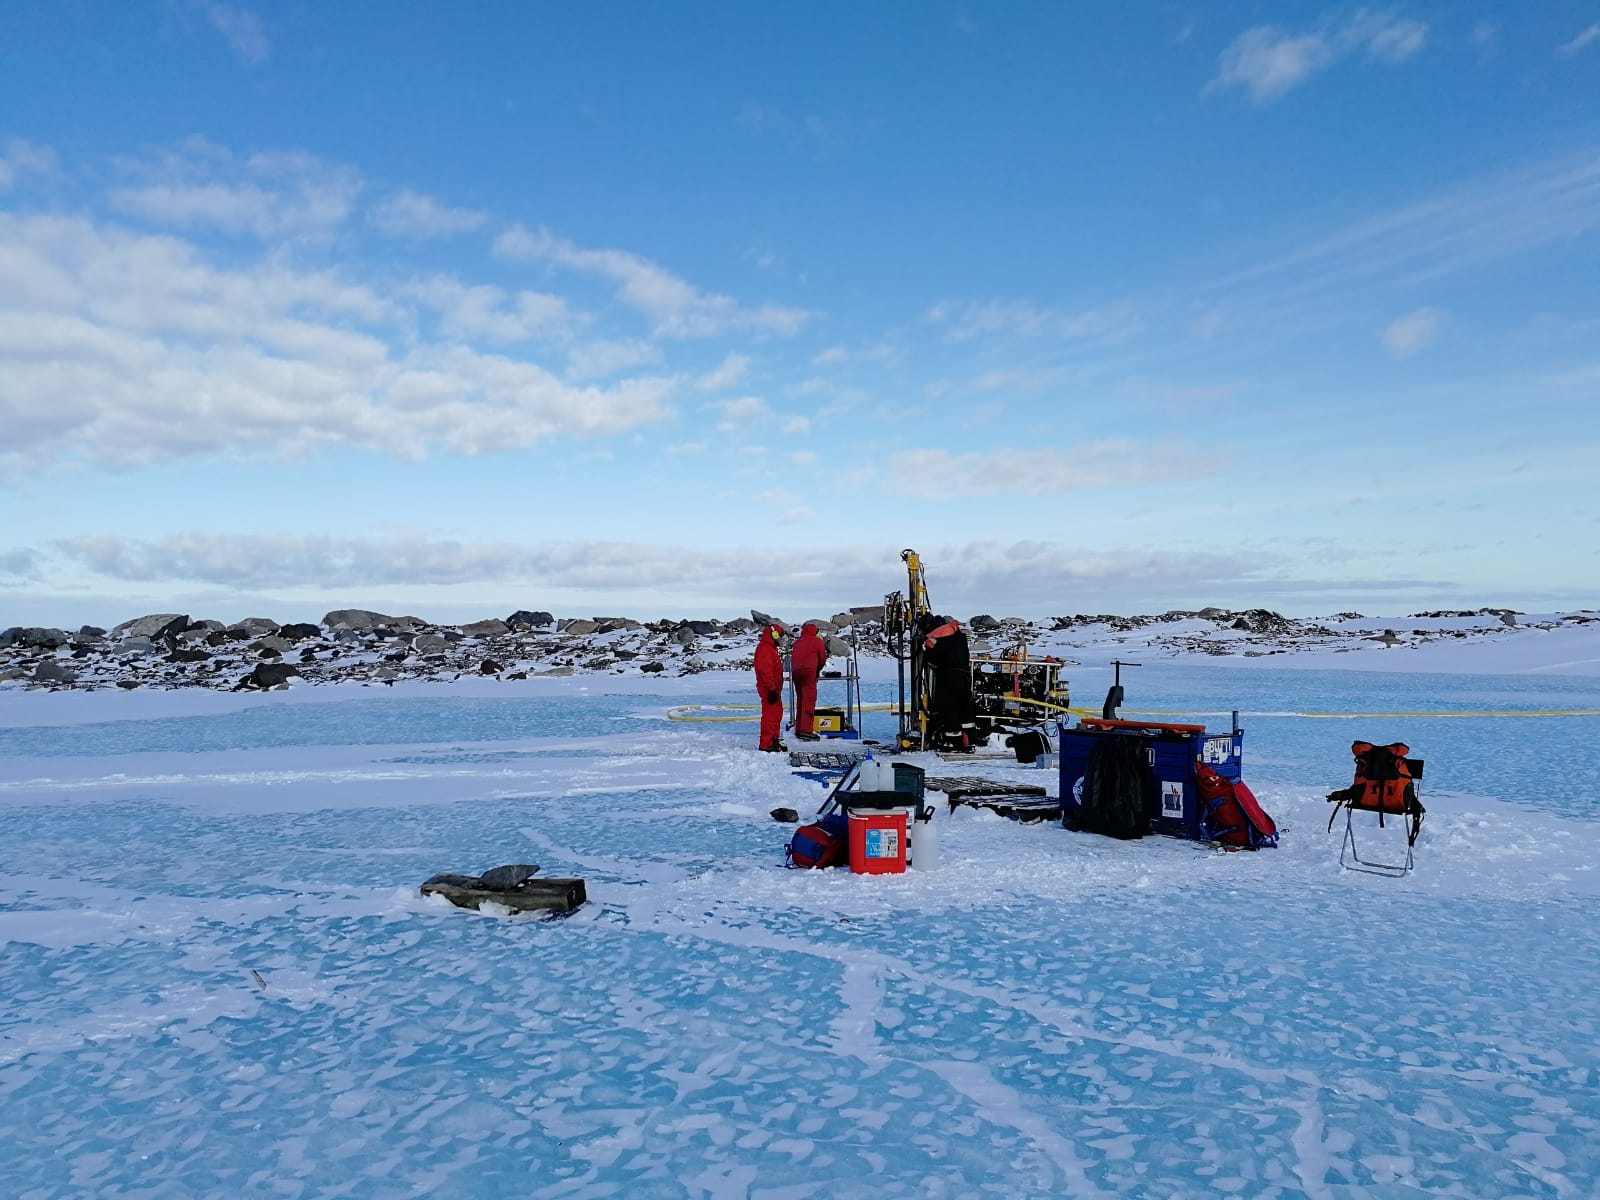 Campo di ricerca sulla superficie ghiacciata